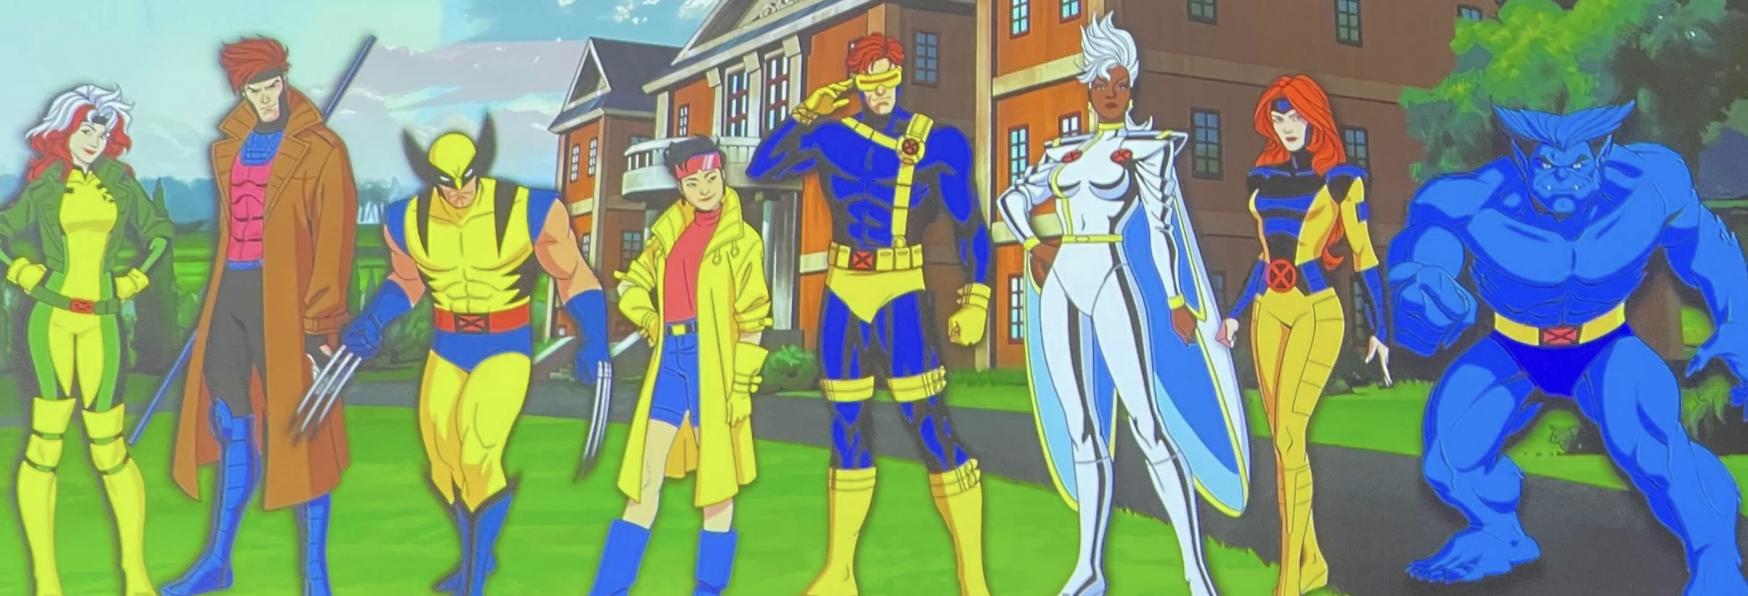 X-Men ’97 2 ci sarà! La Marvel Rinnova la Serie Animata per una nuova Stagione